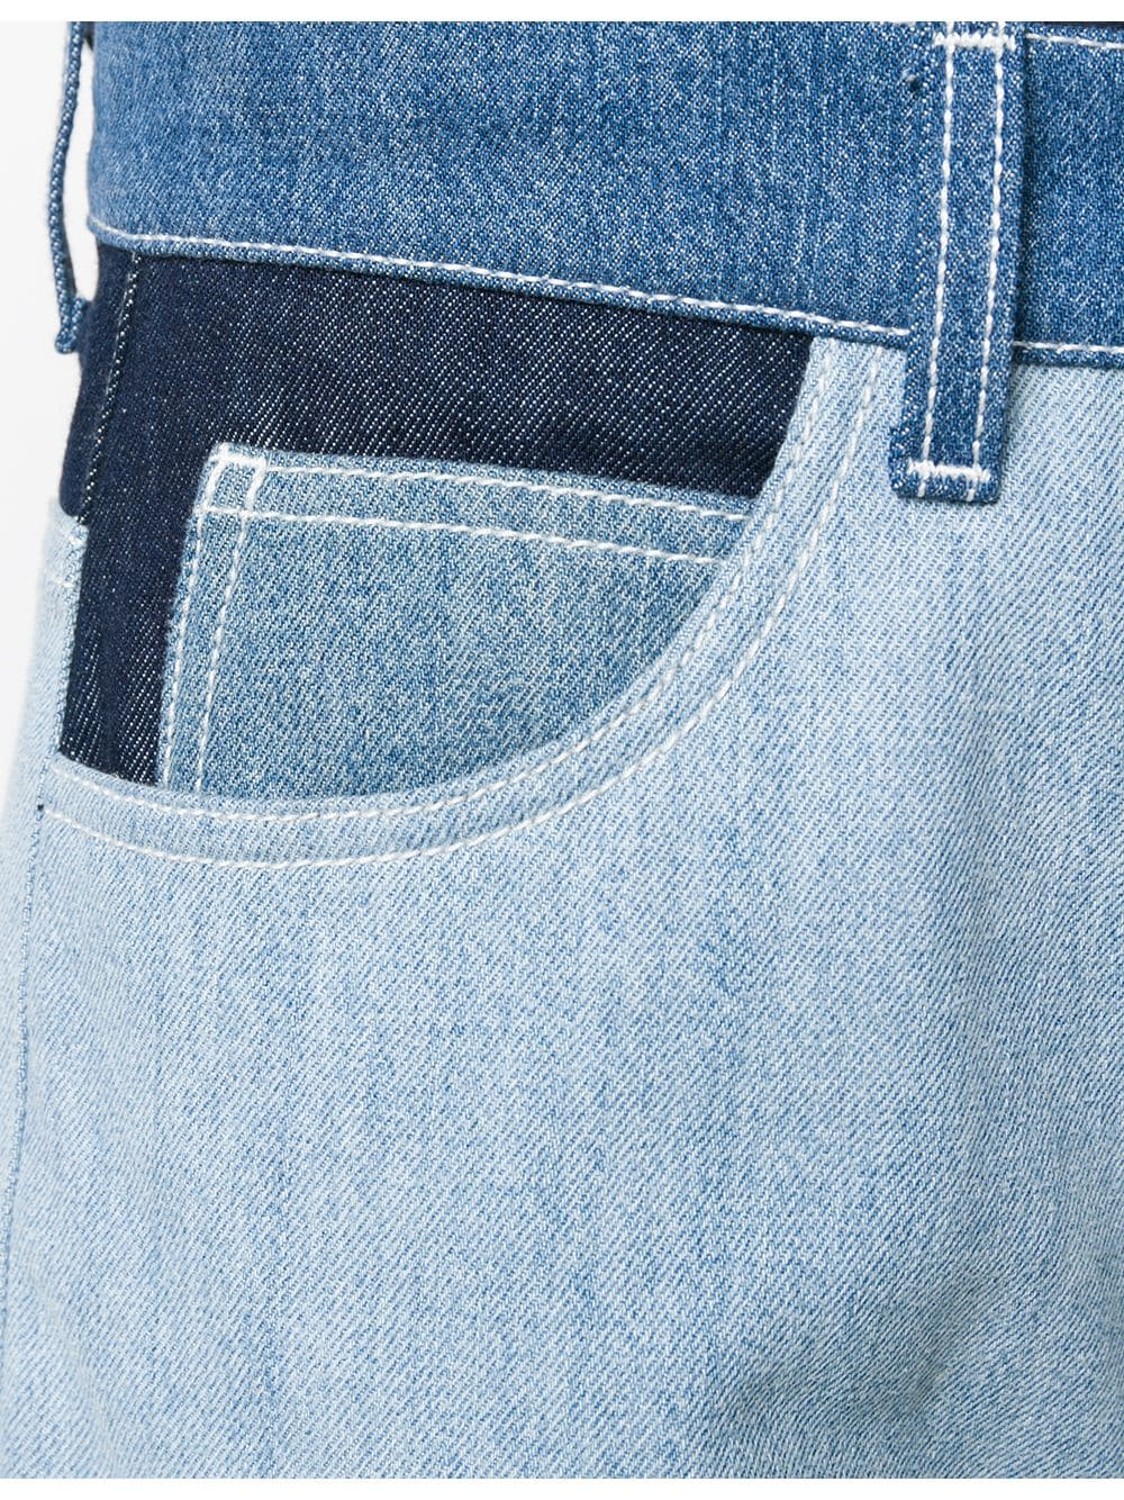 shop Marni Saldi Pantaloni: Pantalone Marni, jeans, modello ampio, tasche davanti e dietro, dettagli a contrasto di colore, zip e bottone a chiusura davanti.

Composizione: 100% cotone. number 1617